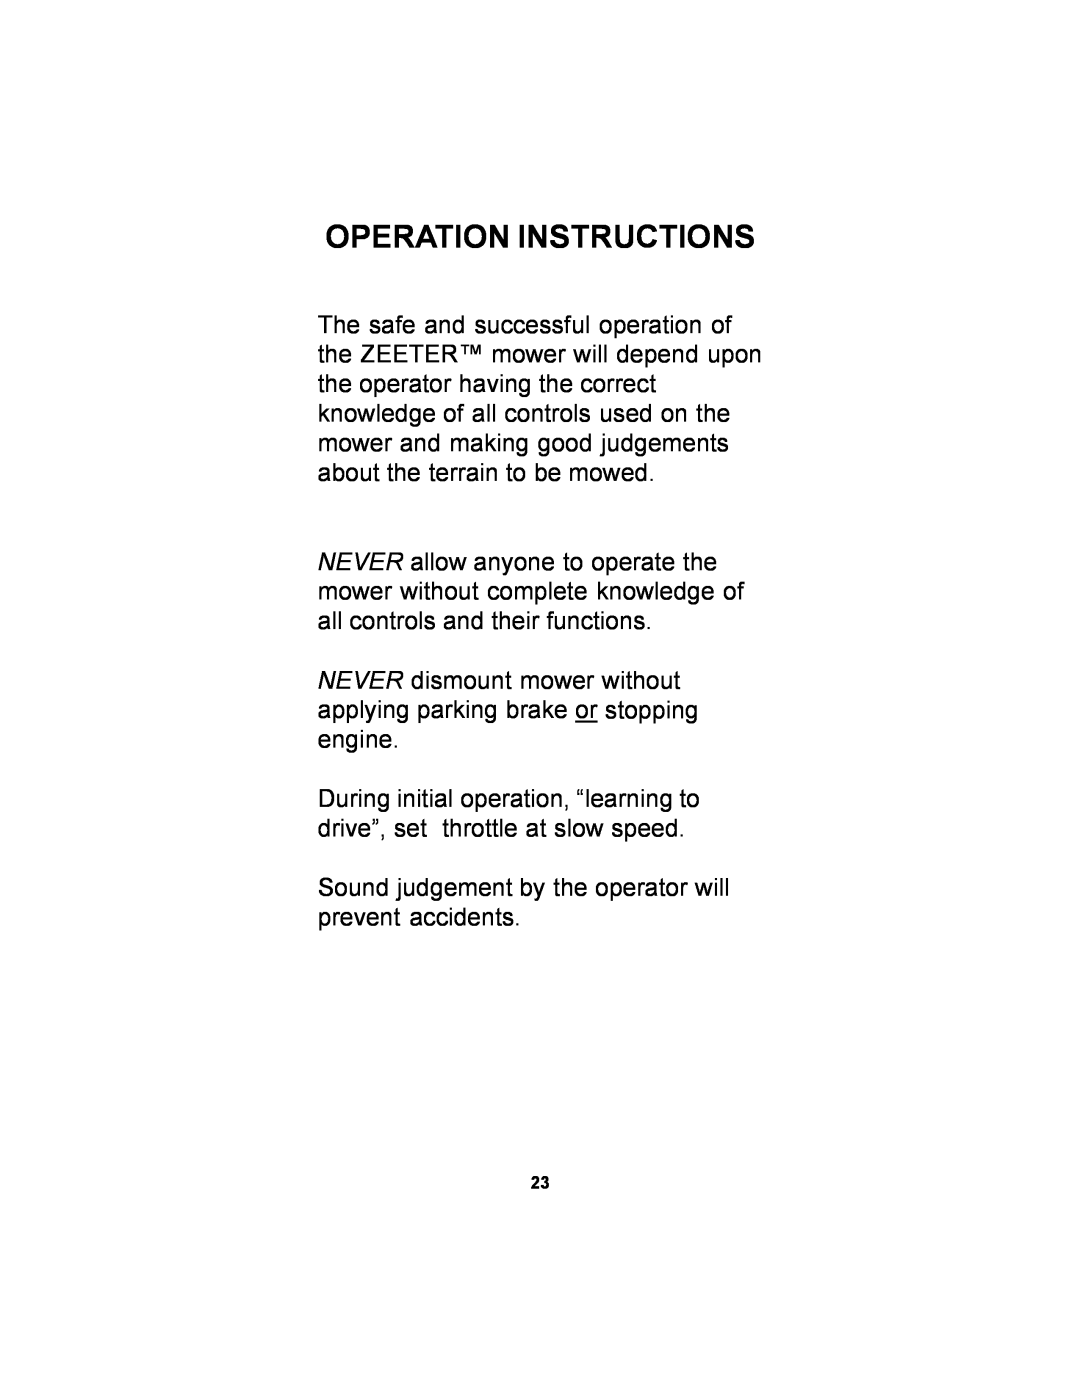 Dixon 14295-1005 manual Operation Instructions 